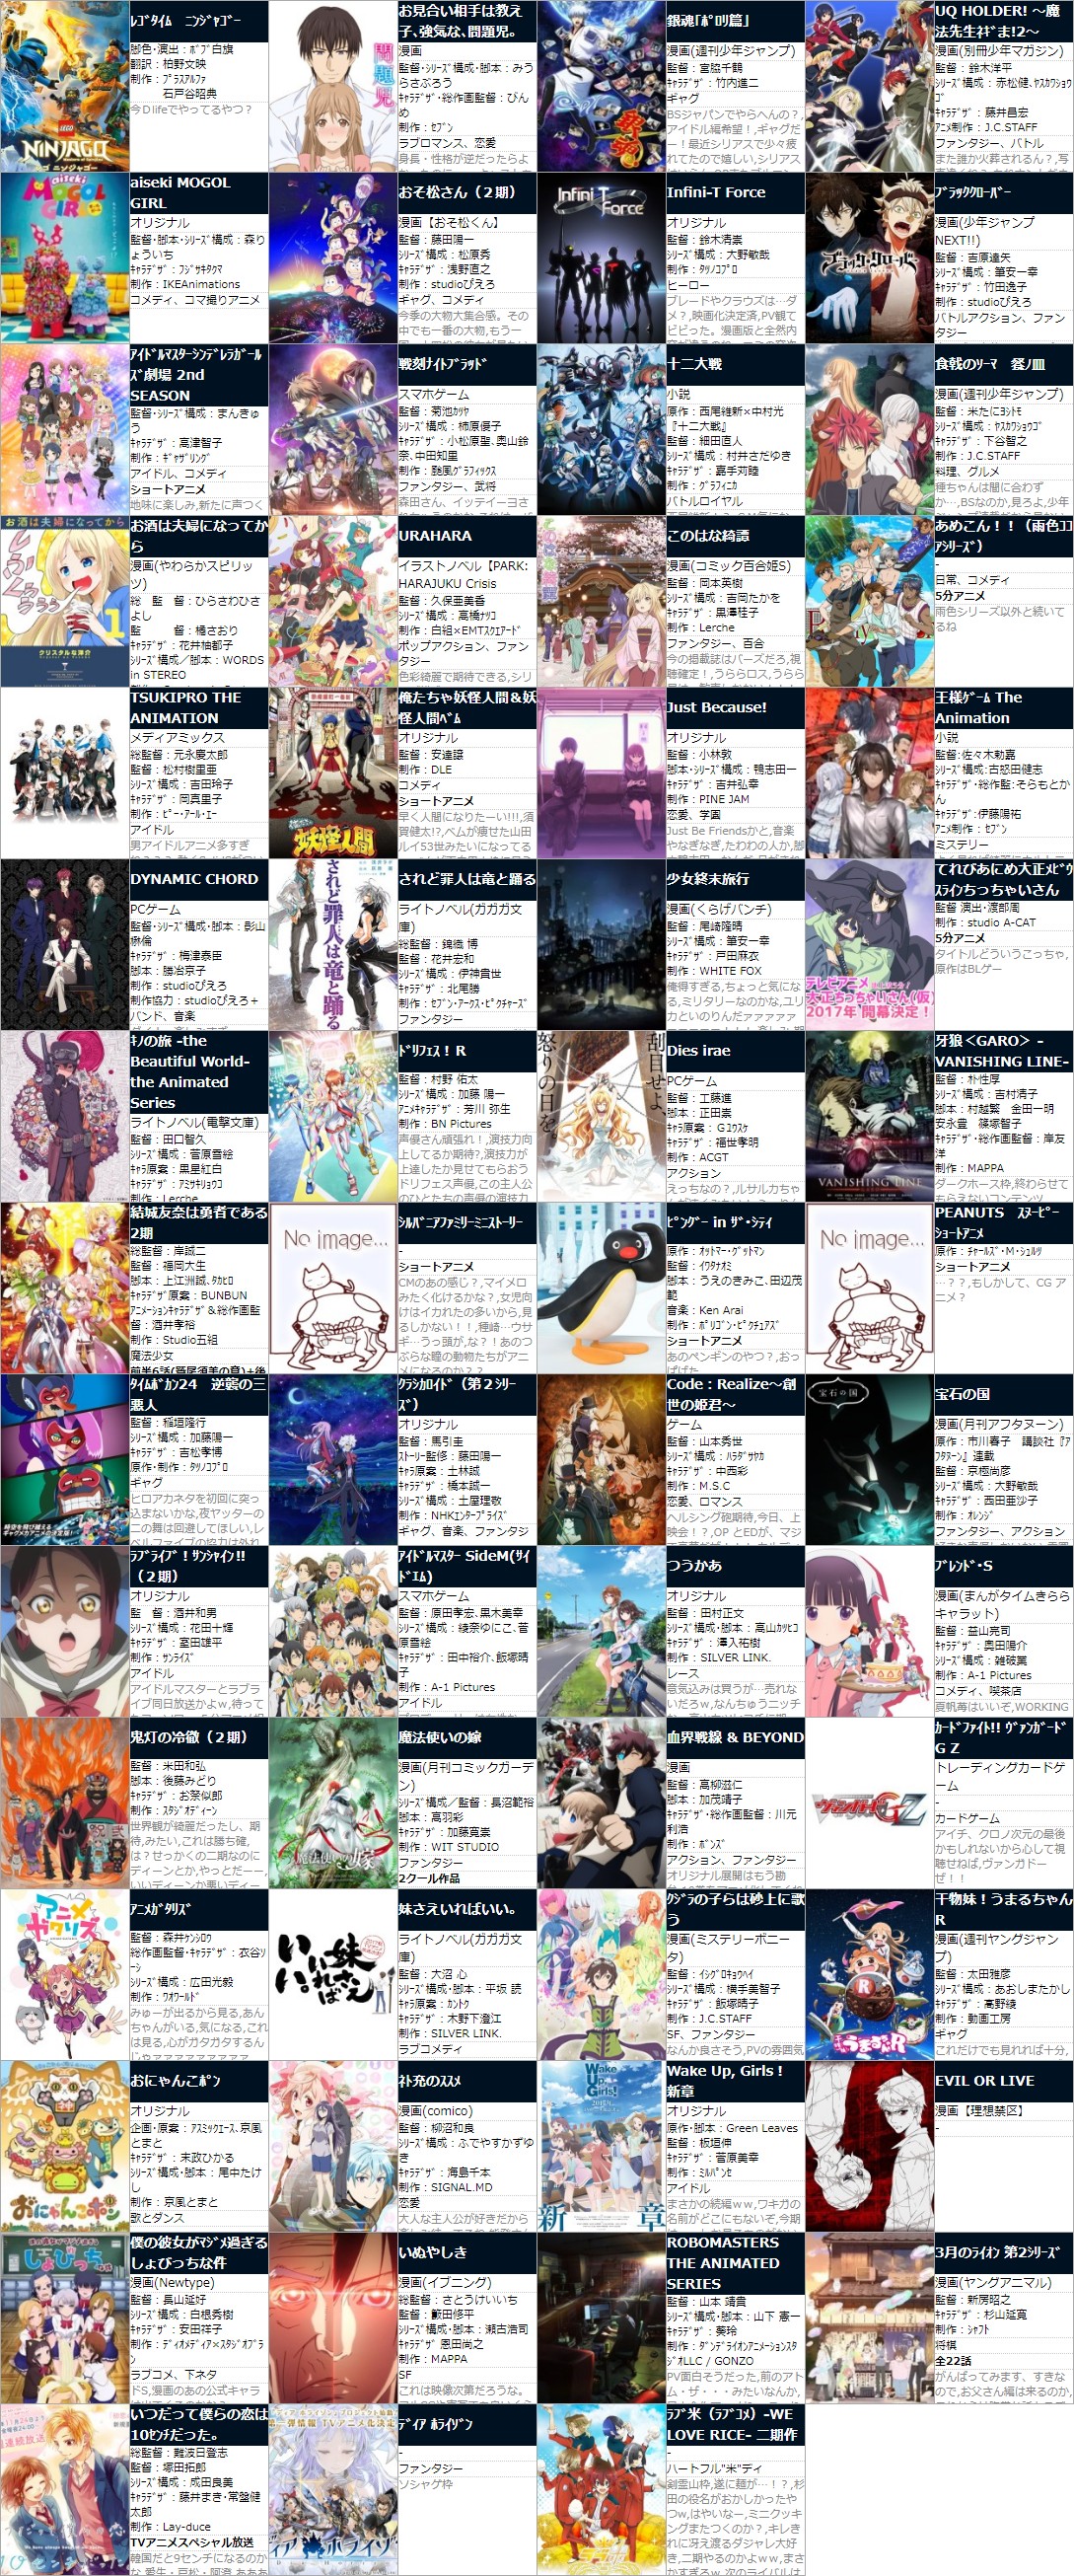 2017年 秋アニメ 最新情報 一覧表 各作品についてネットの反応